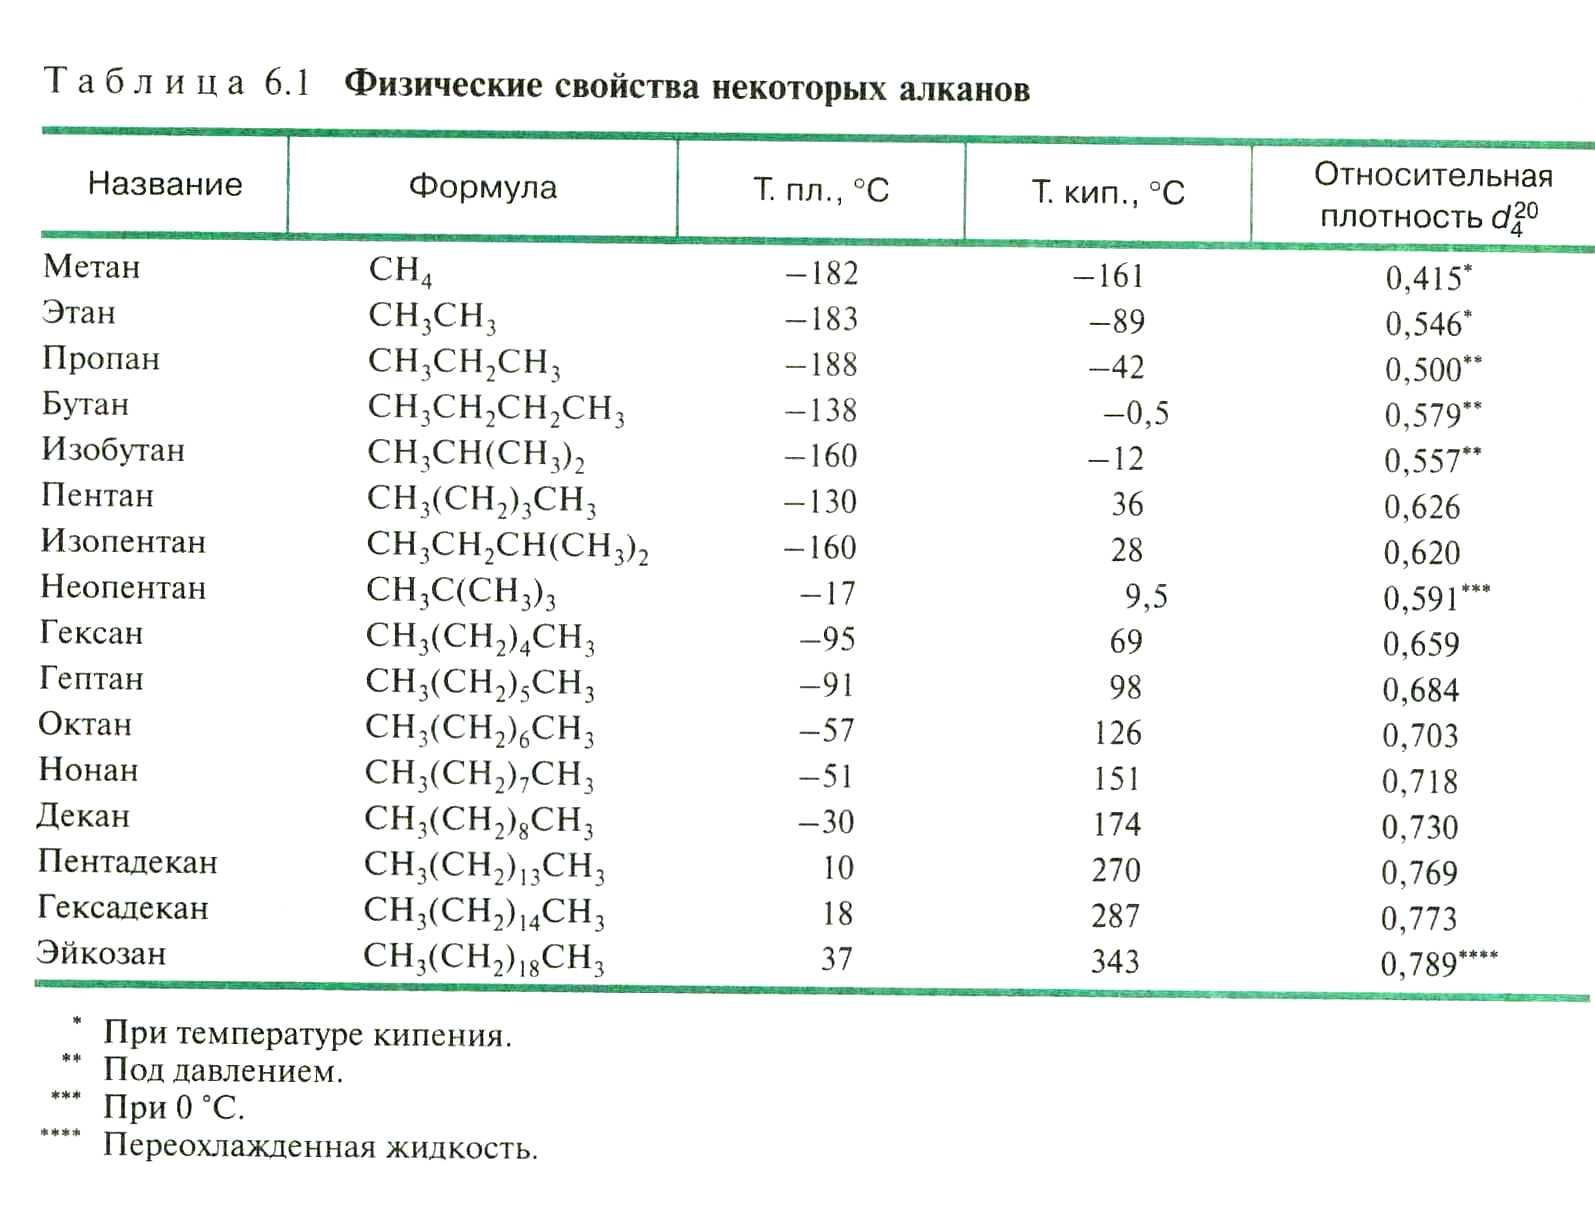 Метан бутан формула. Температура кипения алканов таблица. Циклоалканы Гомологический ряд таблица. Плотность алканов таблица. Таблица газов углеводородов.